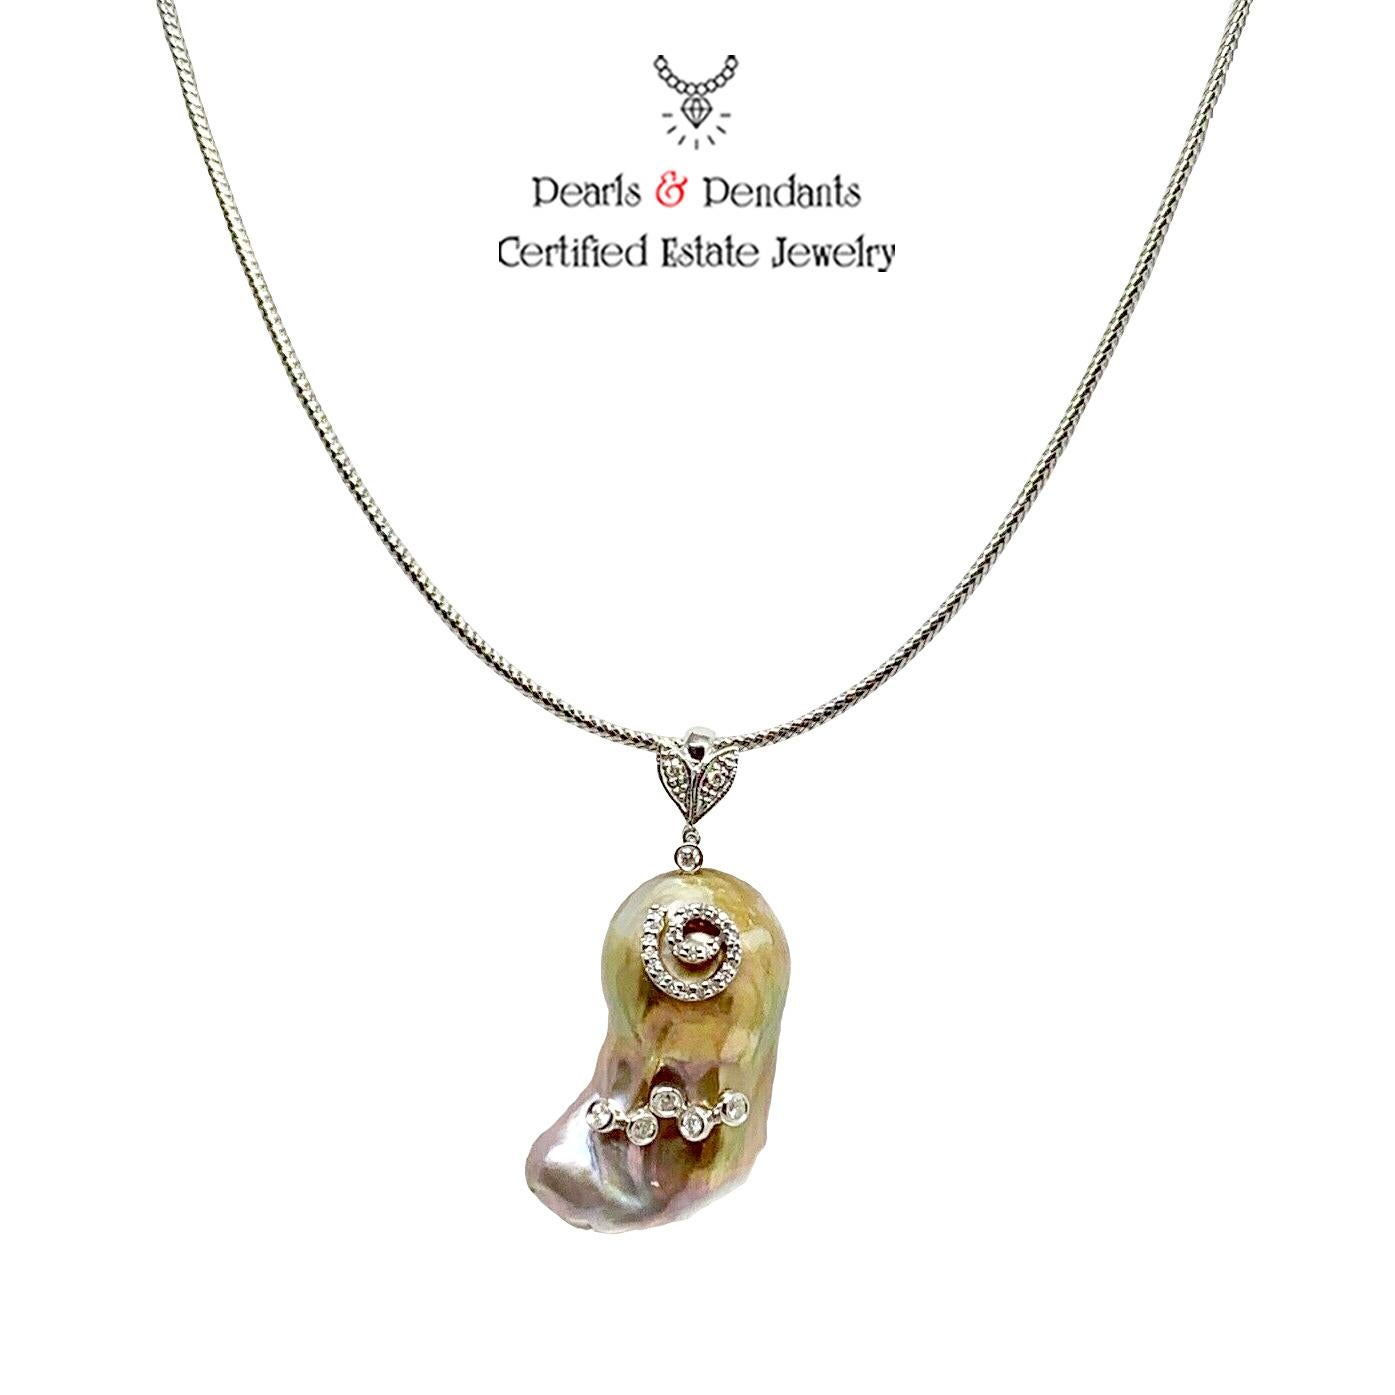 Feine Qualität Barock Süßwasser Perle Diamant Halskette 14k Gold Italien zertifiziert $3950 914368

Dies ist ein einzigartiges, maßgeschneidertes, glamouröses Schmuckstück!

IN ITALIEN GEFERTIGT

Nichts sagt mehr 